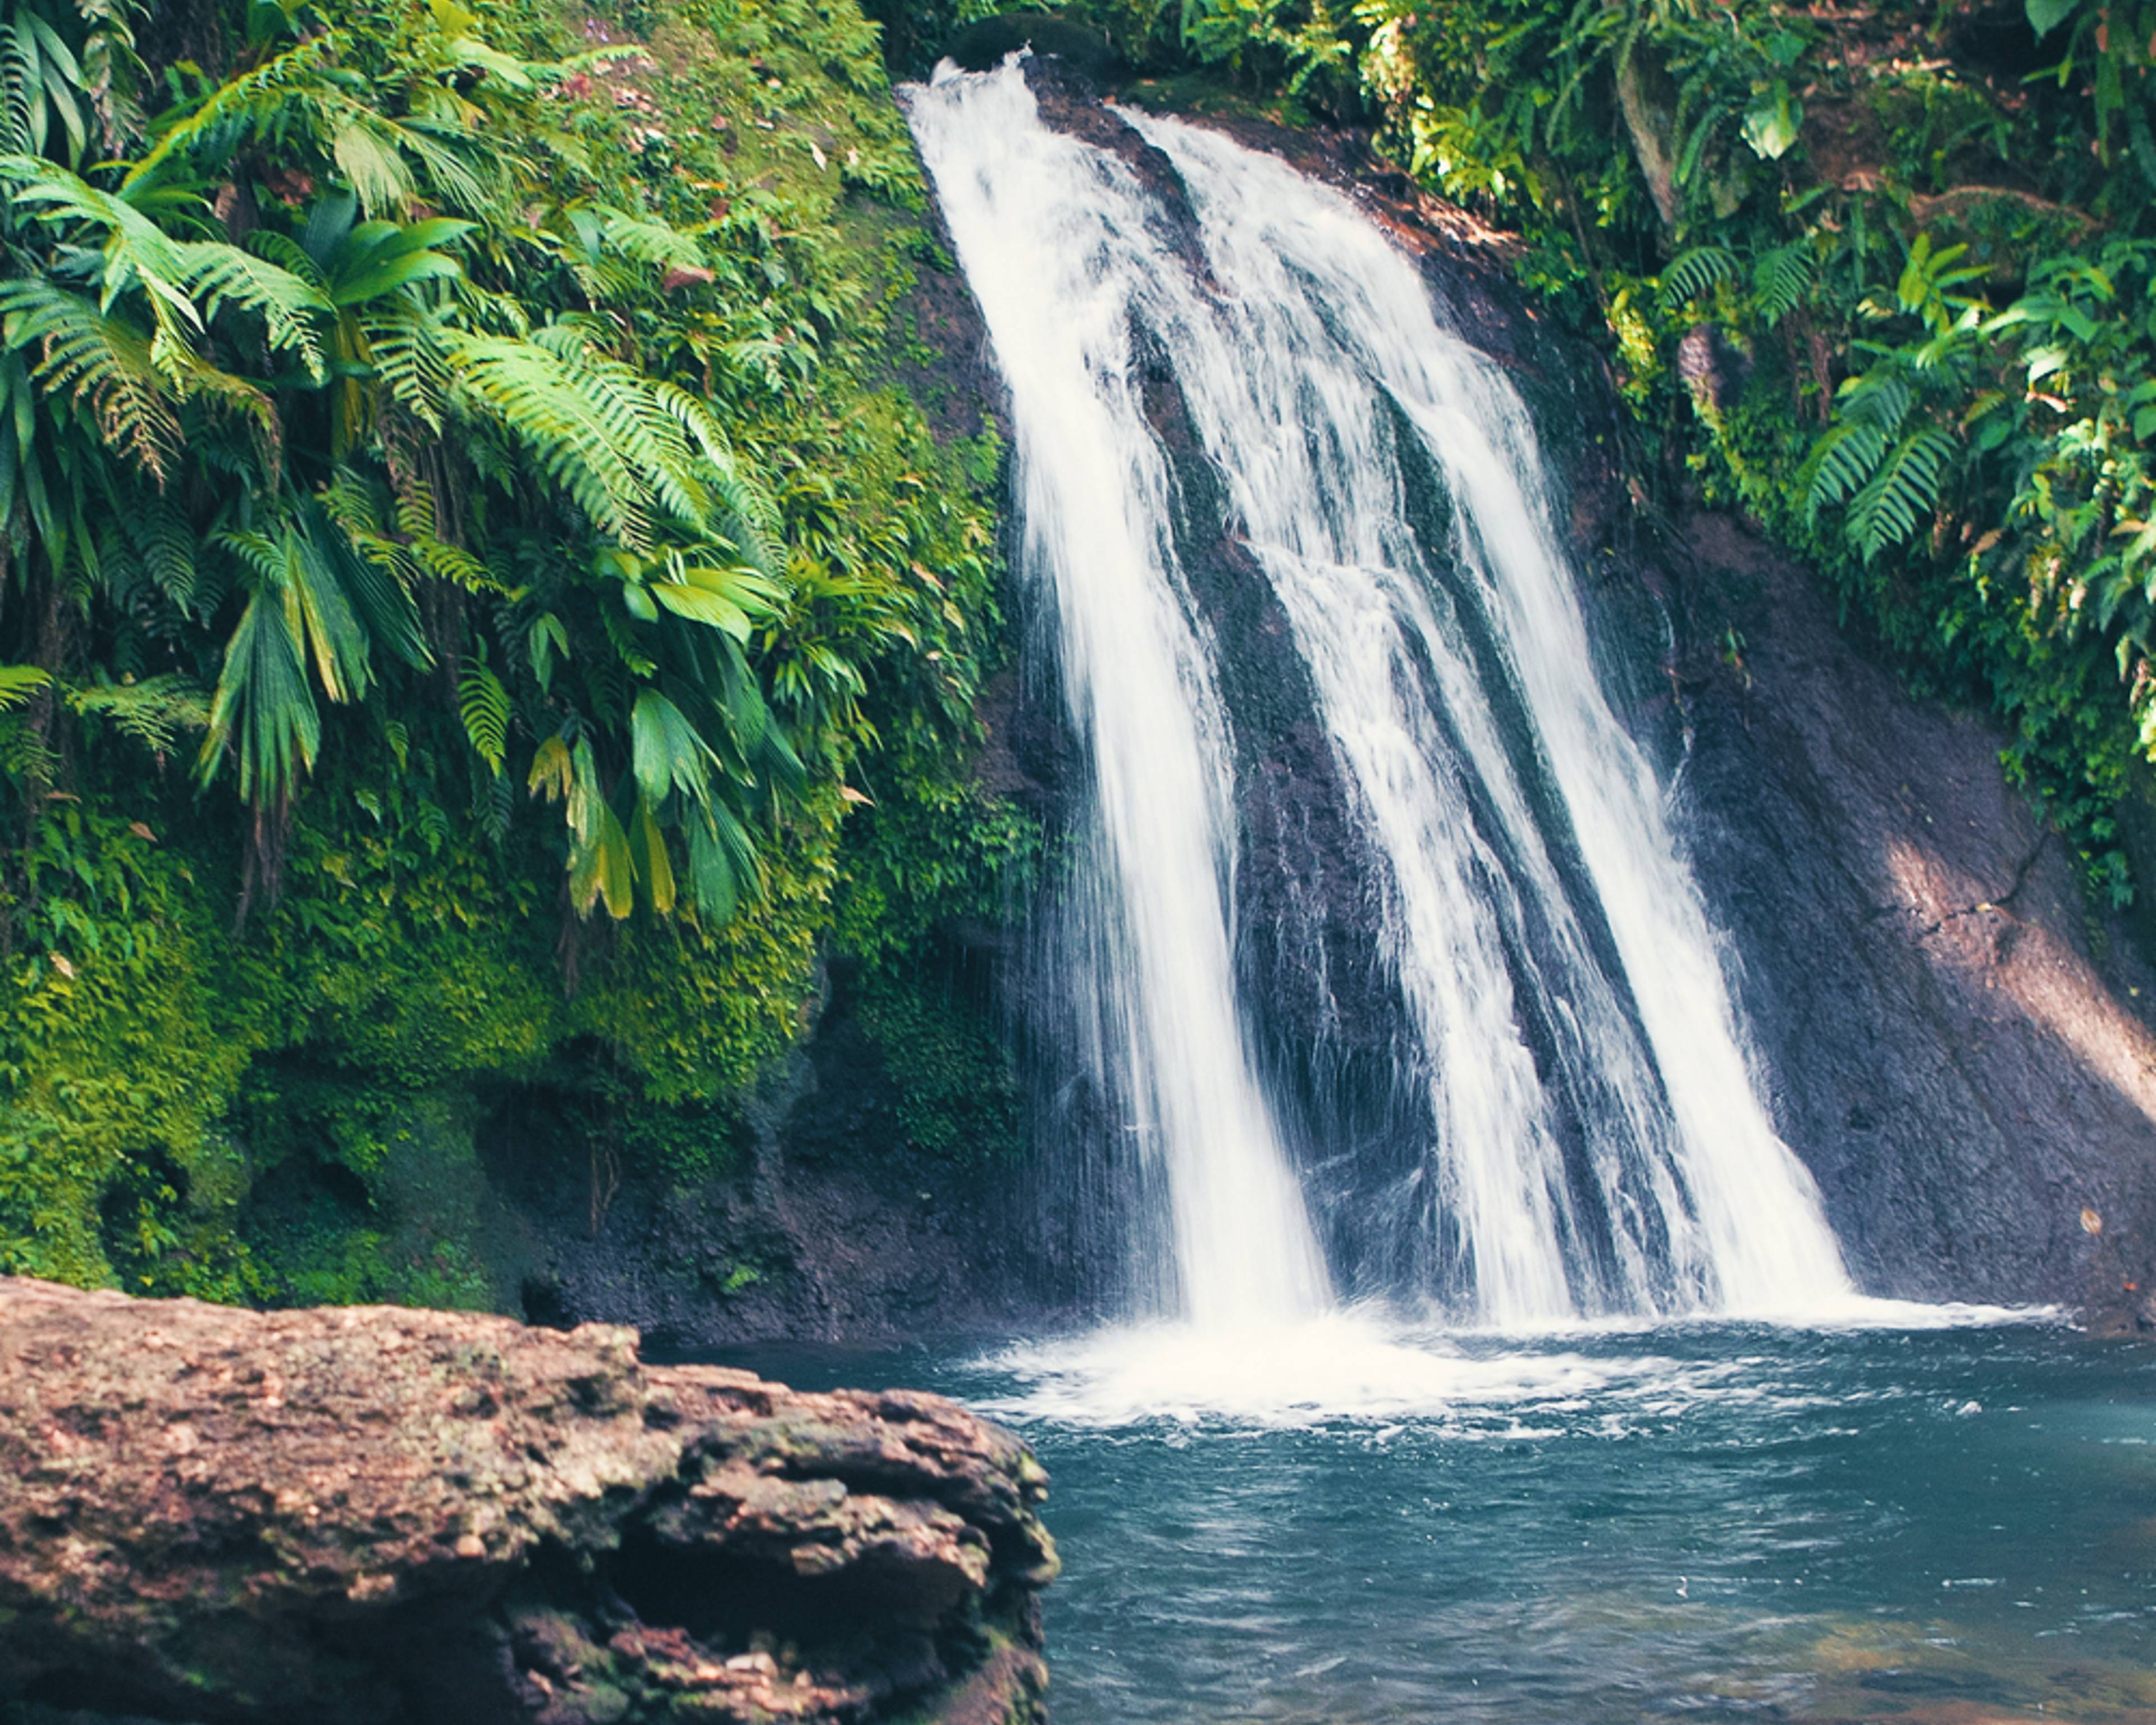 Votre voyage au cœur des grands espaces naturels en Guadeloupe